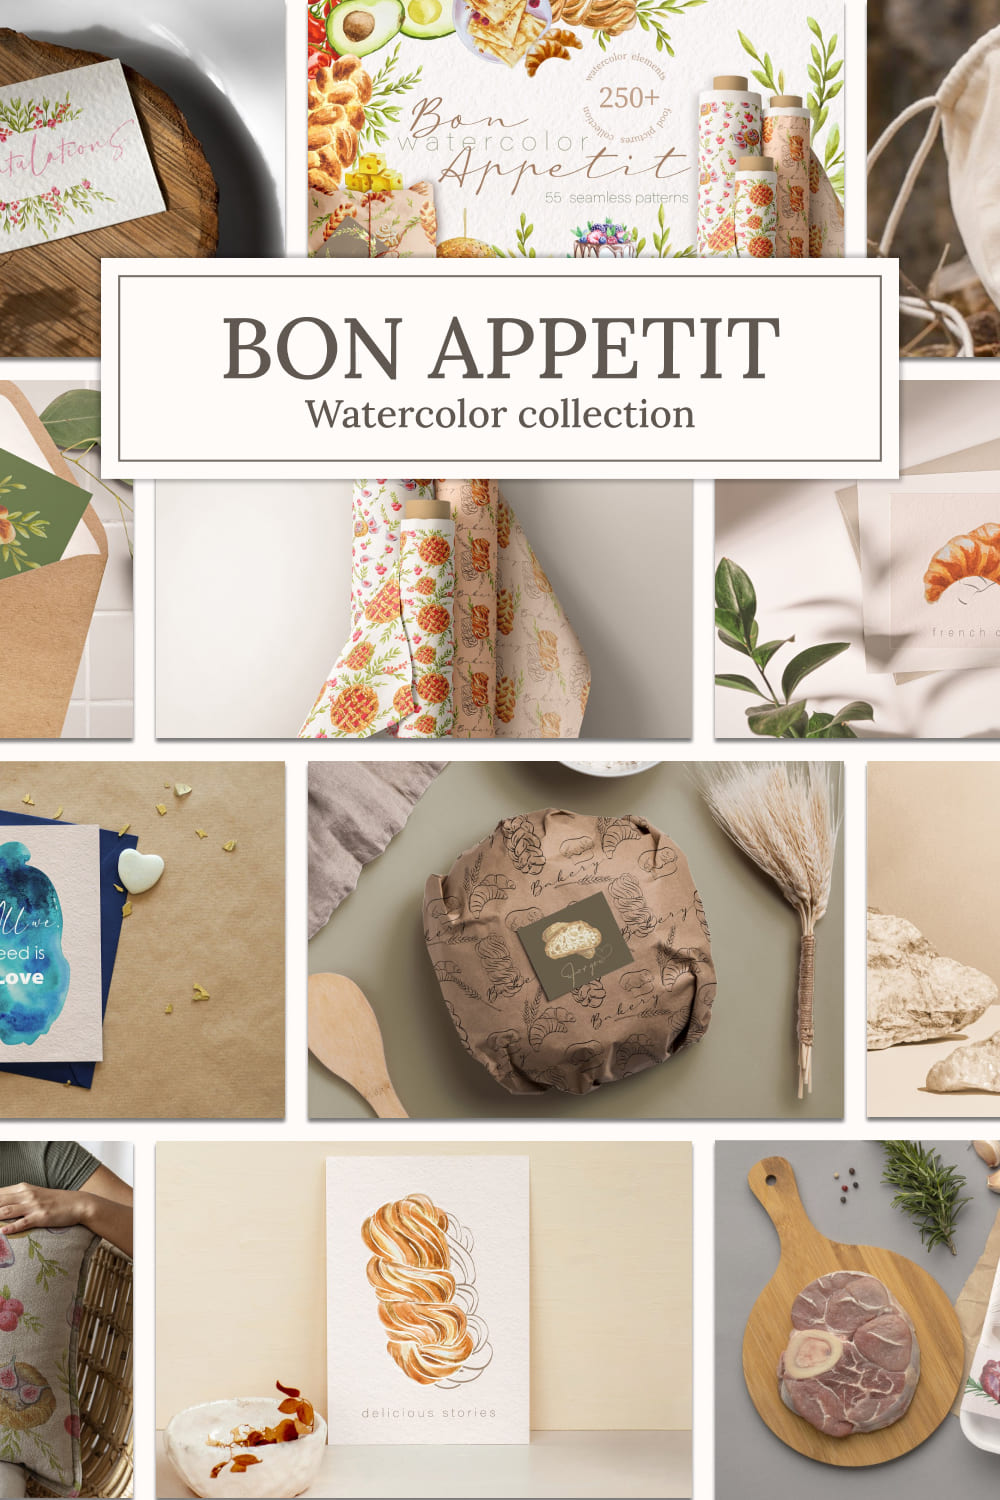 Bon appetit watercolor collection - Pinterest image preview.